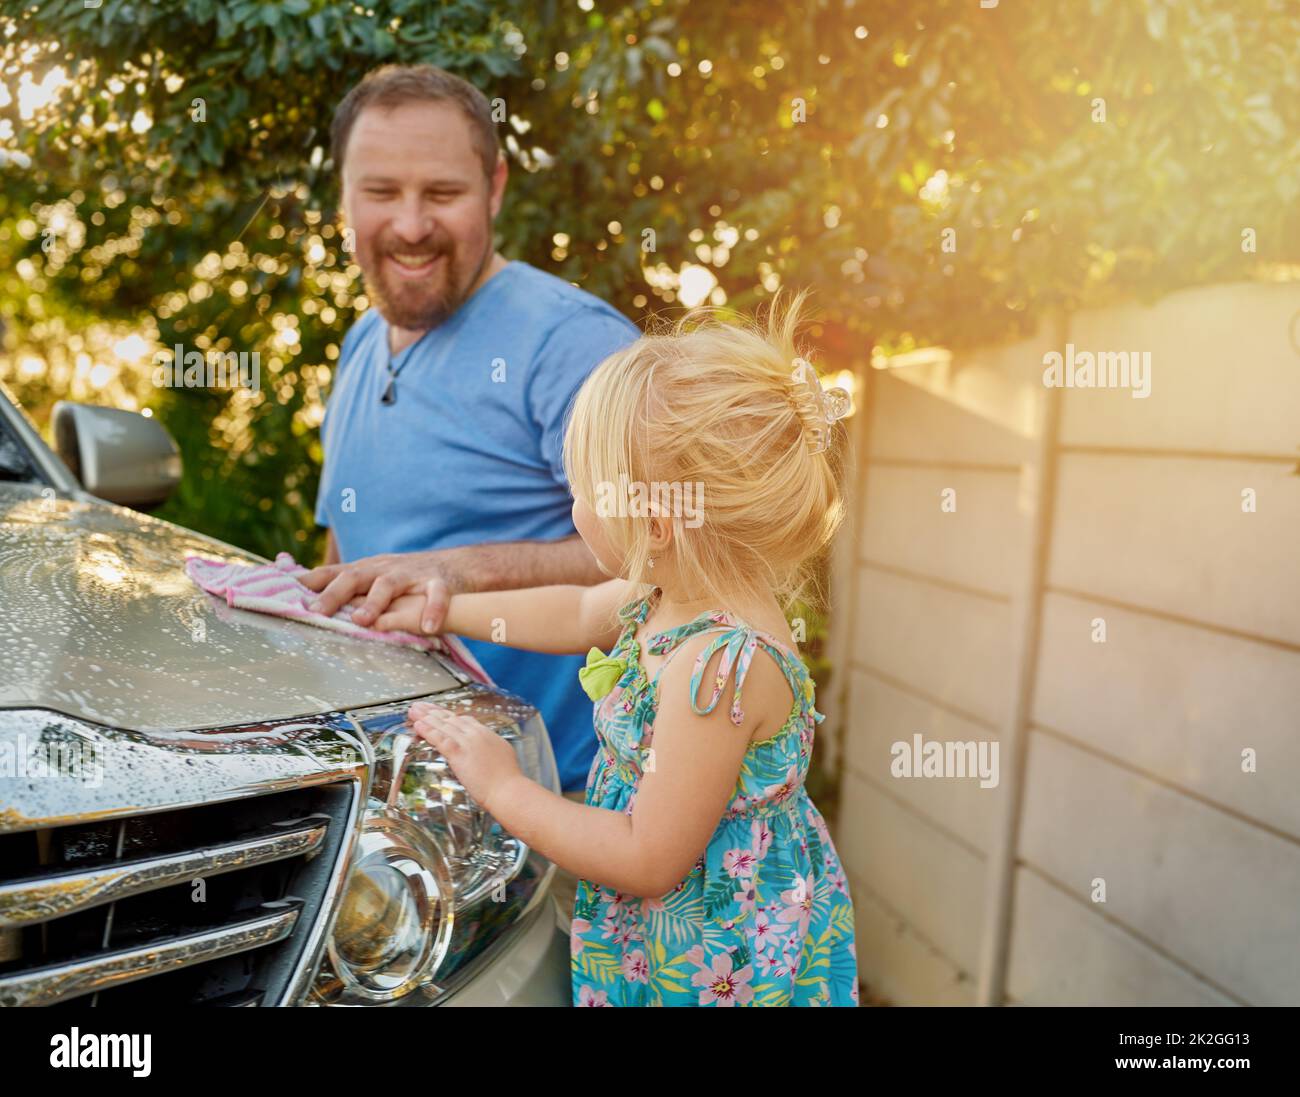 Die gemeinsame Arbeit ist eine großartige Erfahrung im miteinander. Eine kleine Aufnahme eines Vaters und einer Tochter, die zusammen ein Auto waschen. Stockfoto